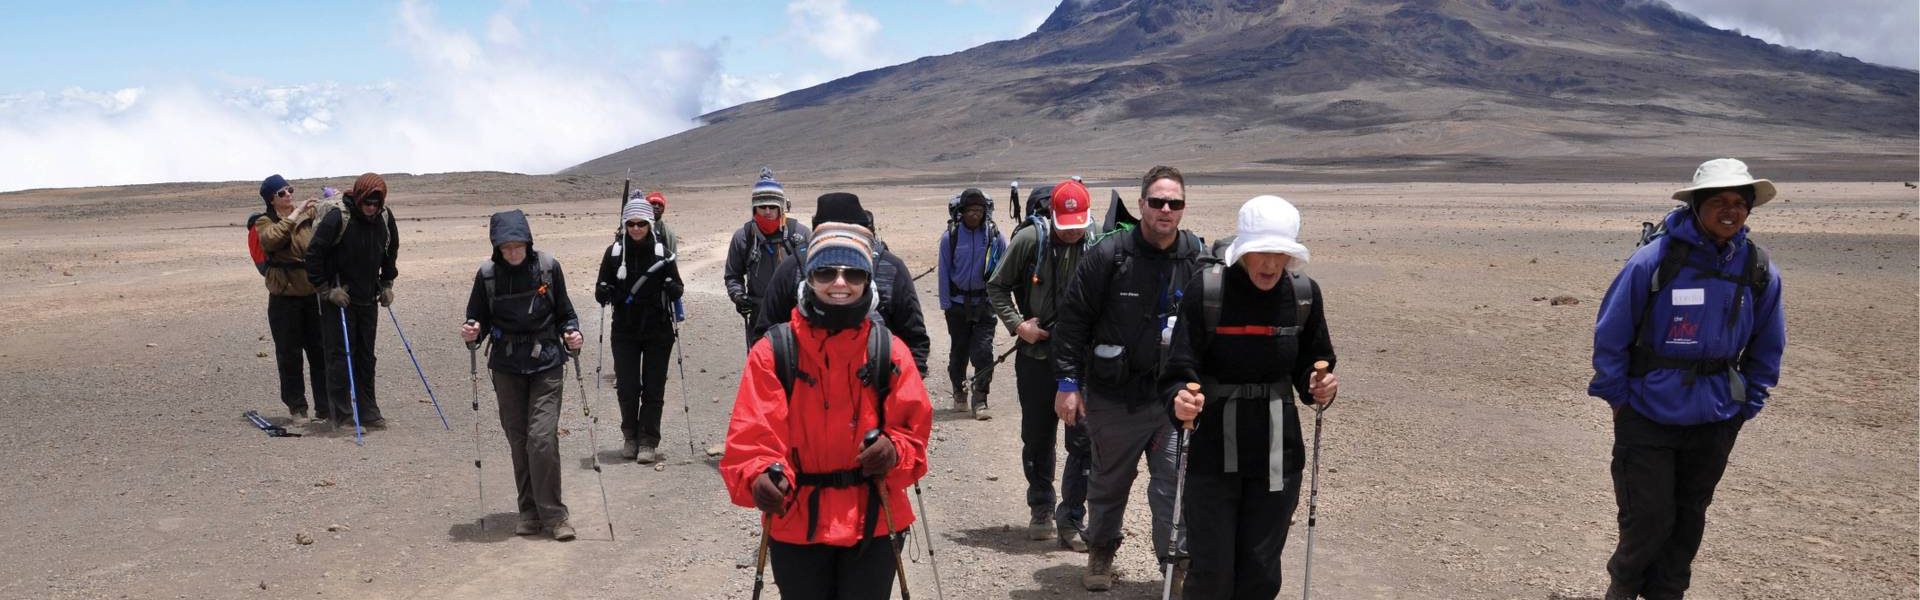 Mount Kilimanjaro Day Hikes